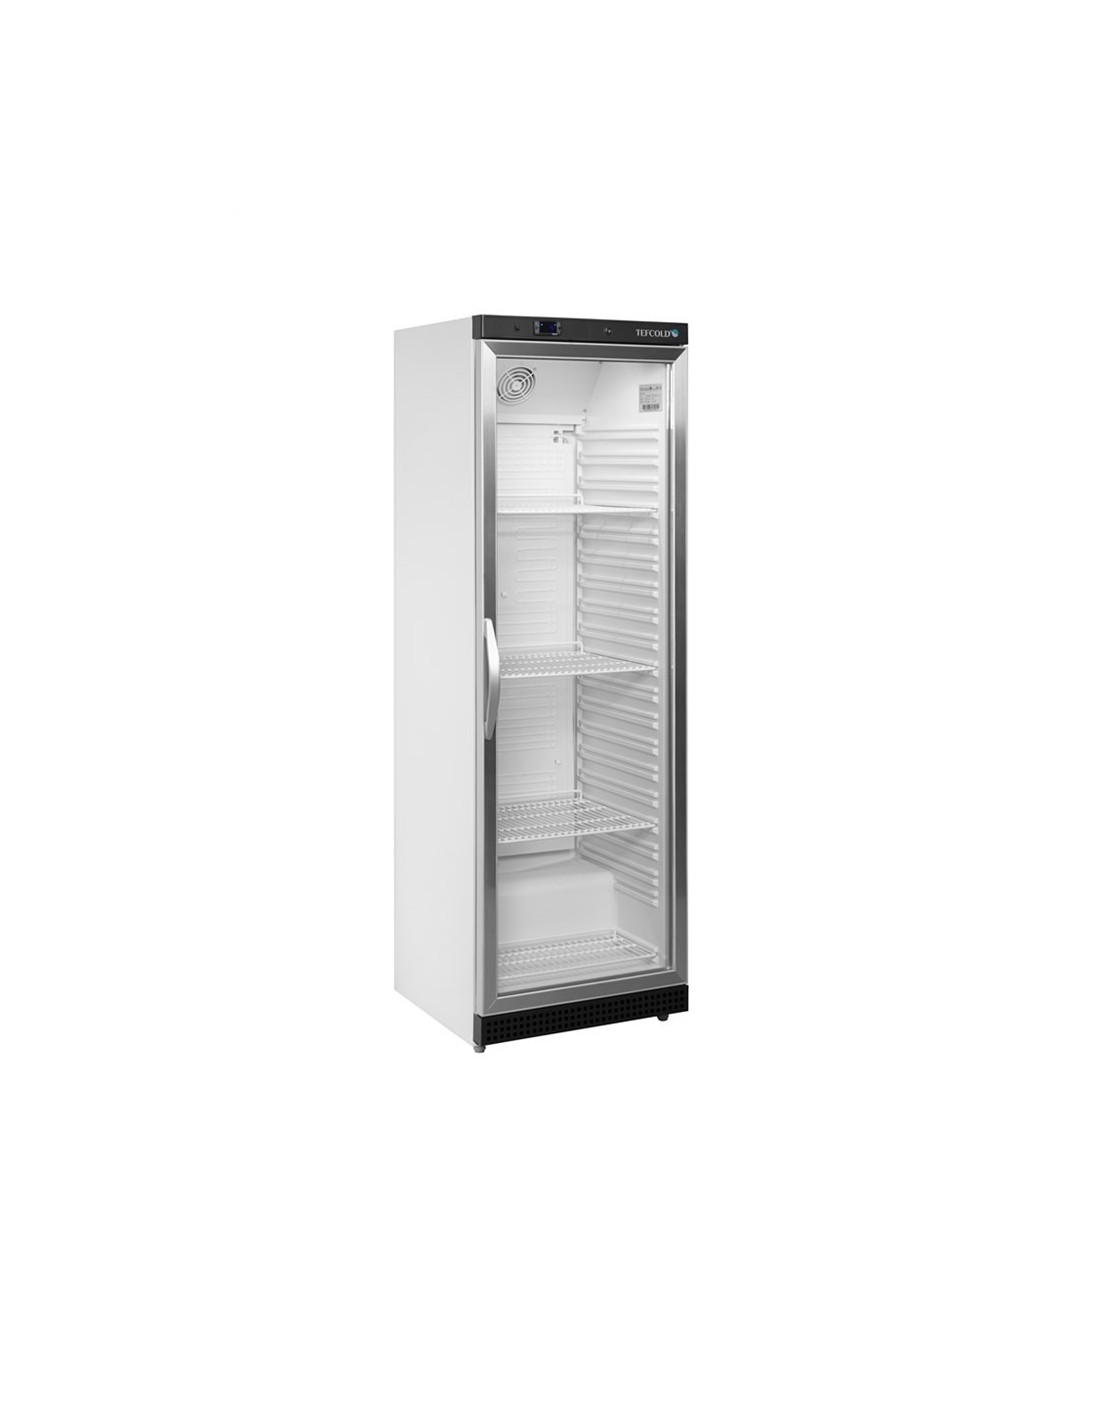 PROCOLD - armoire froide ventilée, réfrigérateur vitré, frigo